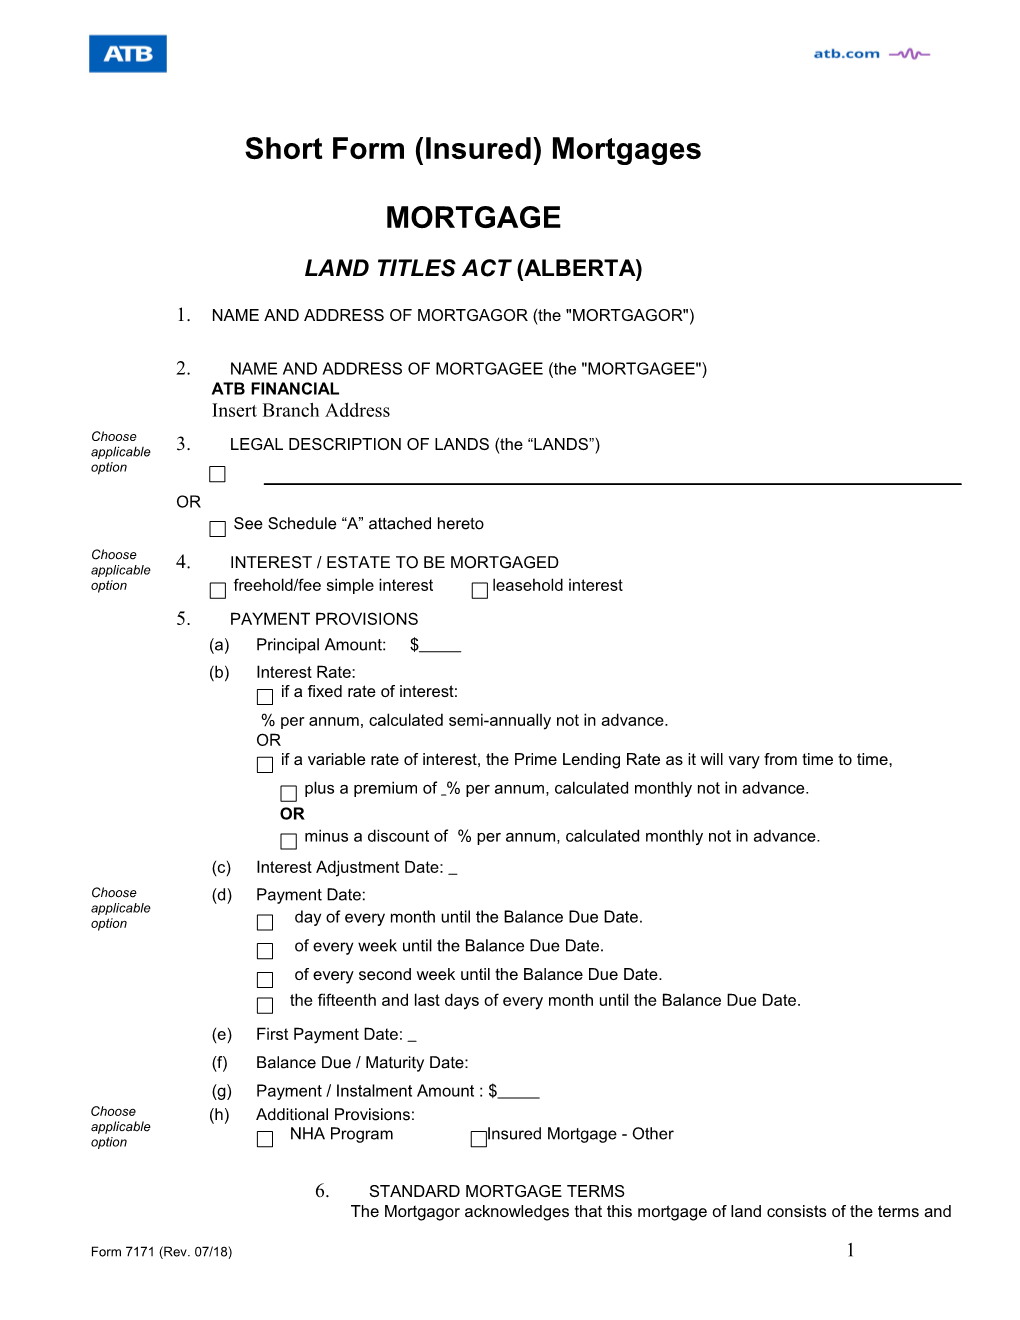 Form 7171 Short Form Insured Mortgages